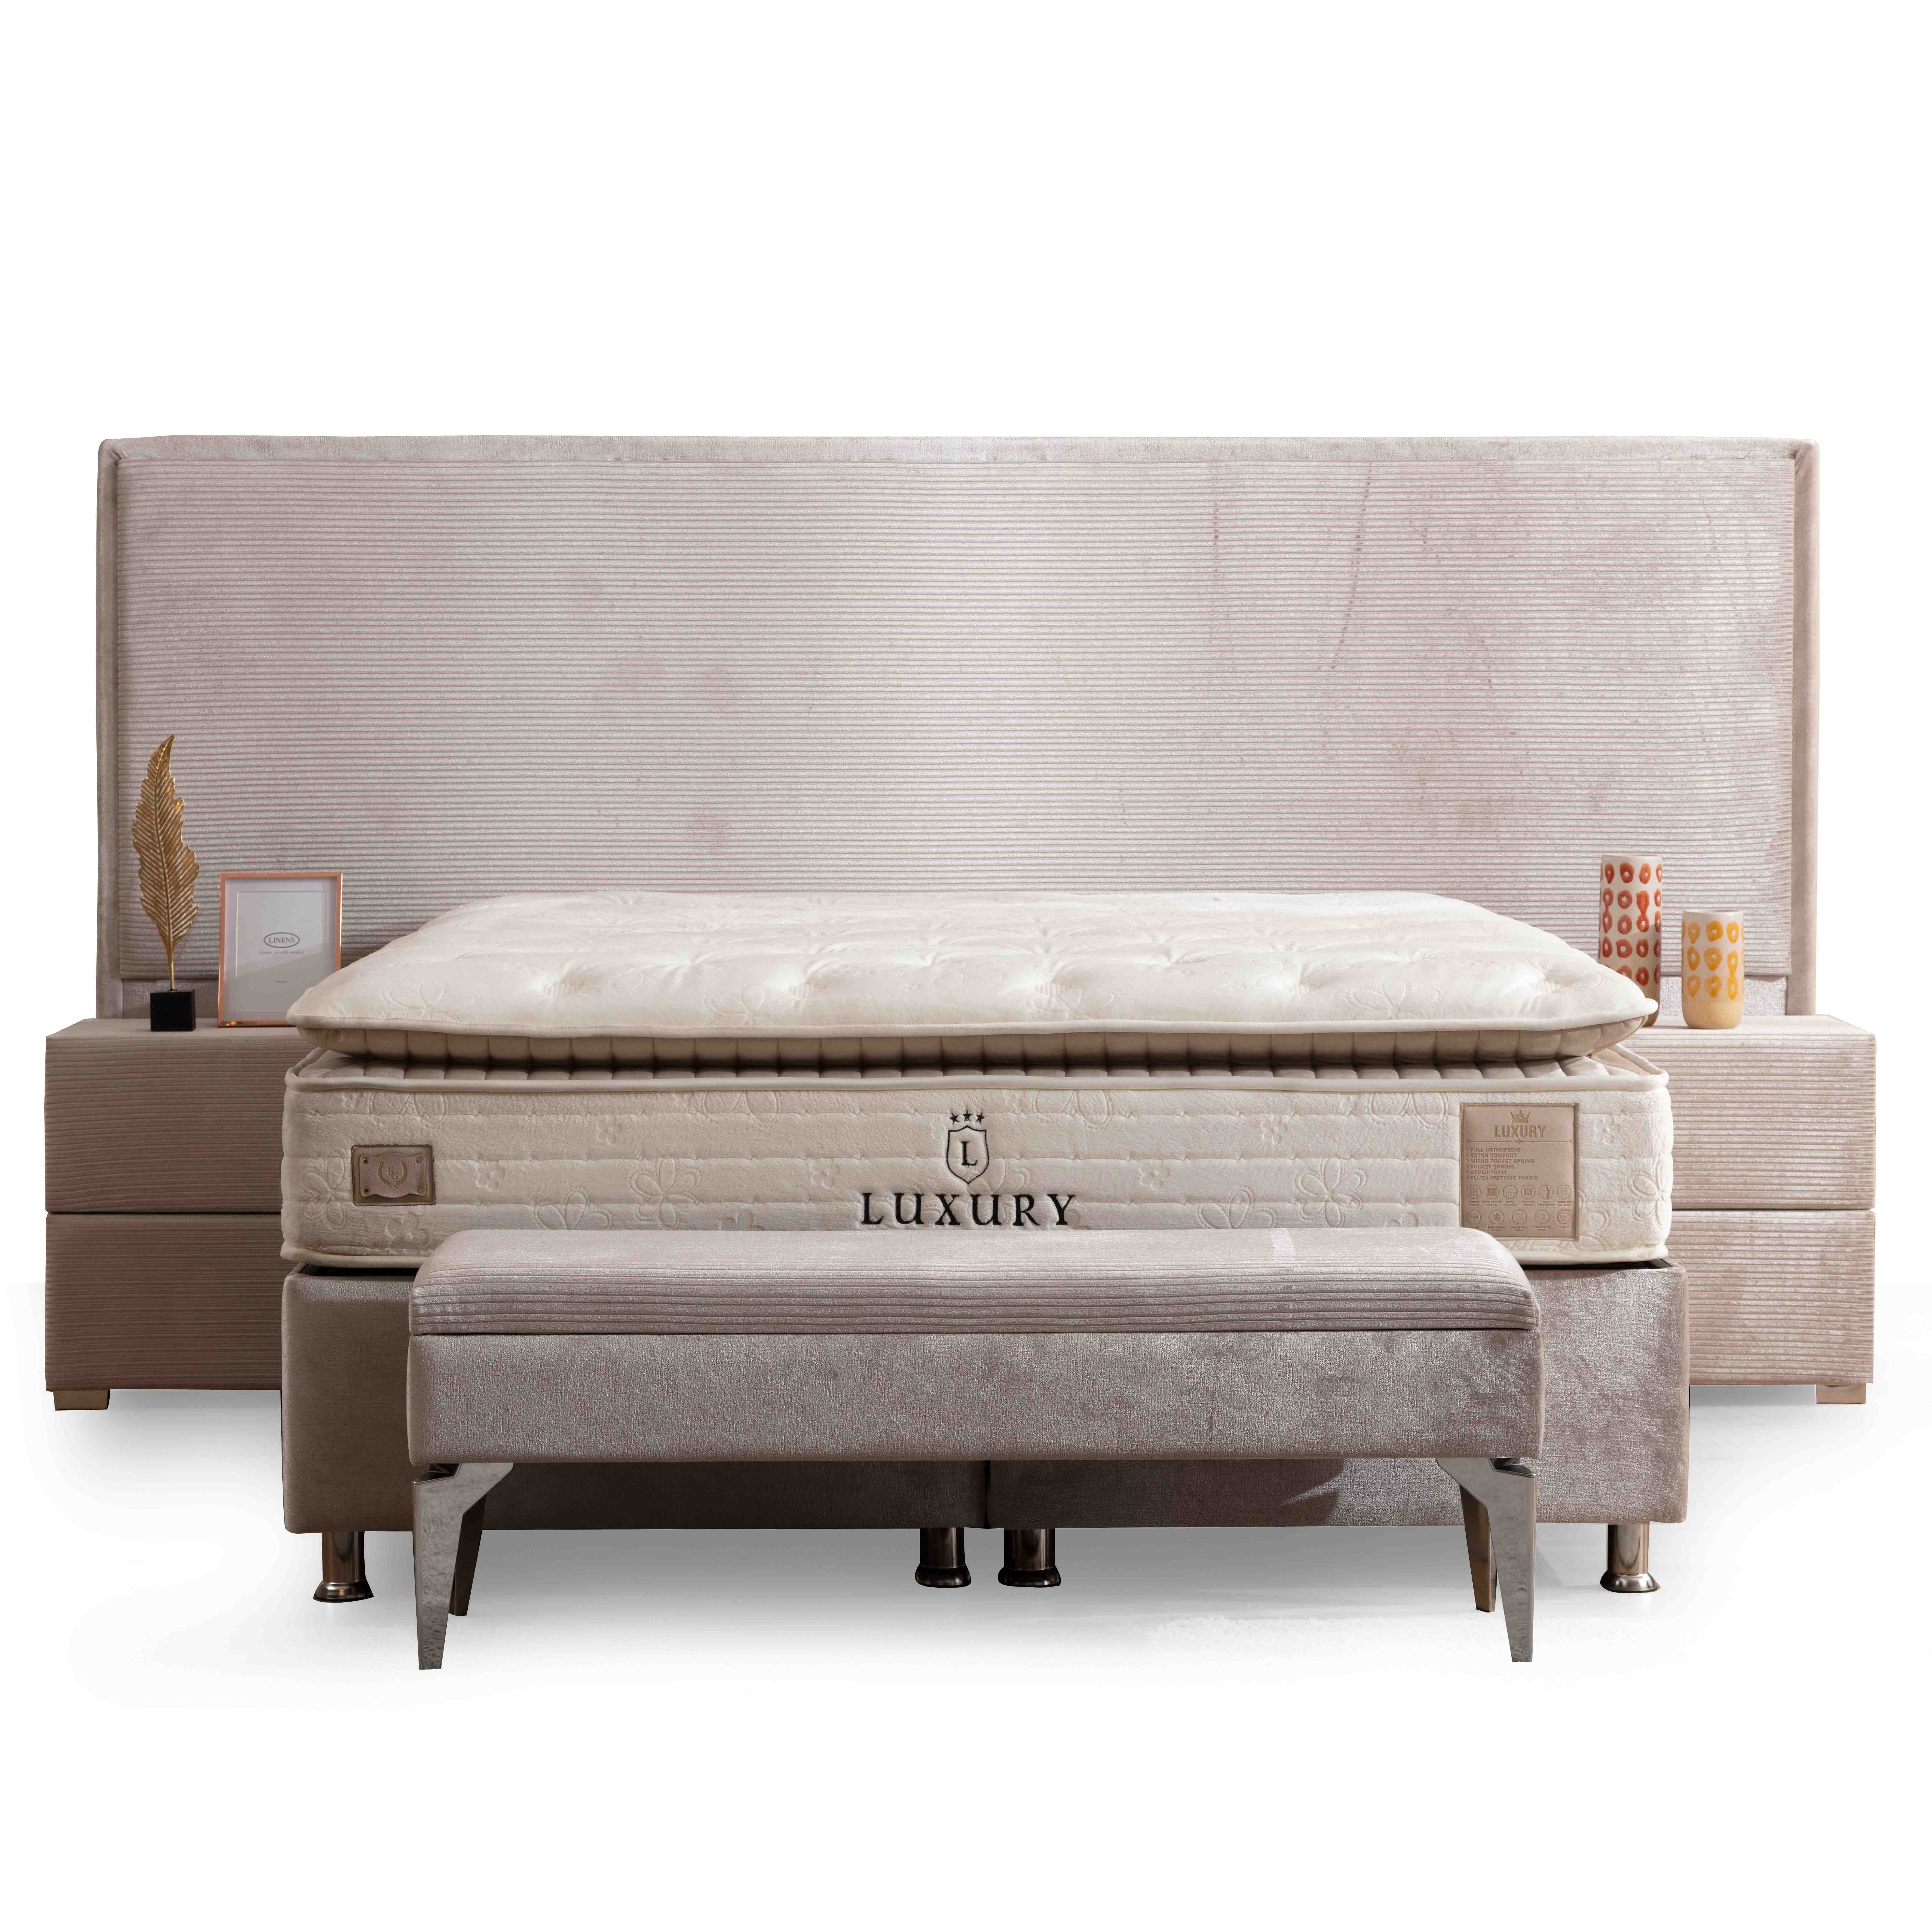 Havana Bed With Storage 180*200